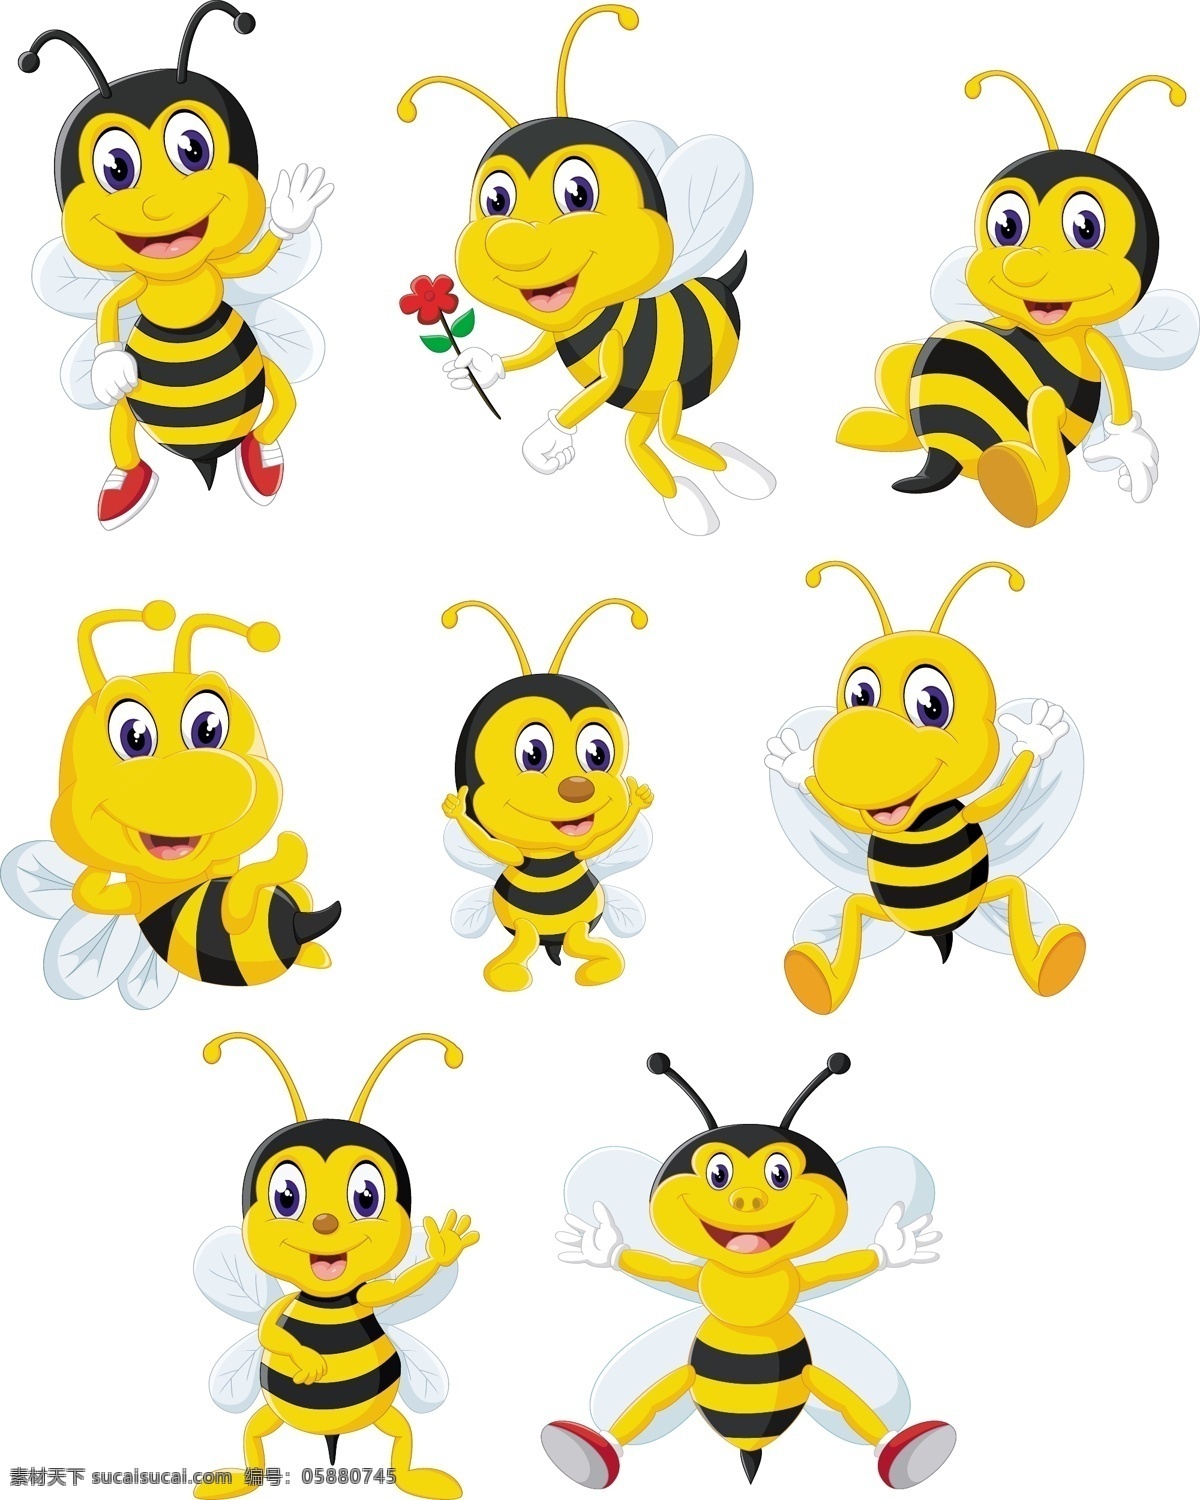 可爱卡通蜜蜂 时钟 卡通表情 卡通世界 小卡通 笑脸 卡通蜜蜂 可爱蜜蜂 蜜蜂 卡通动物 卡通设计